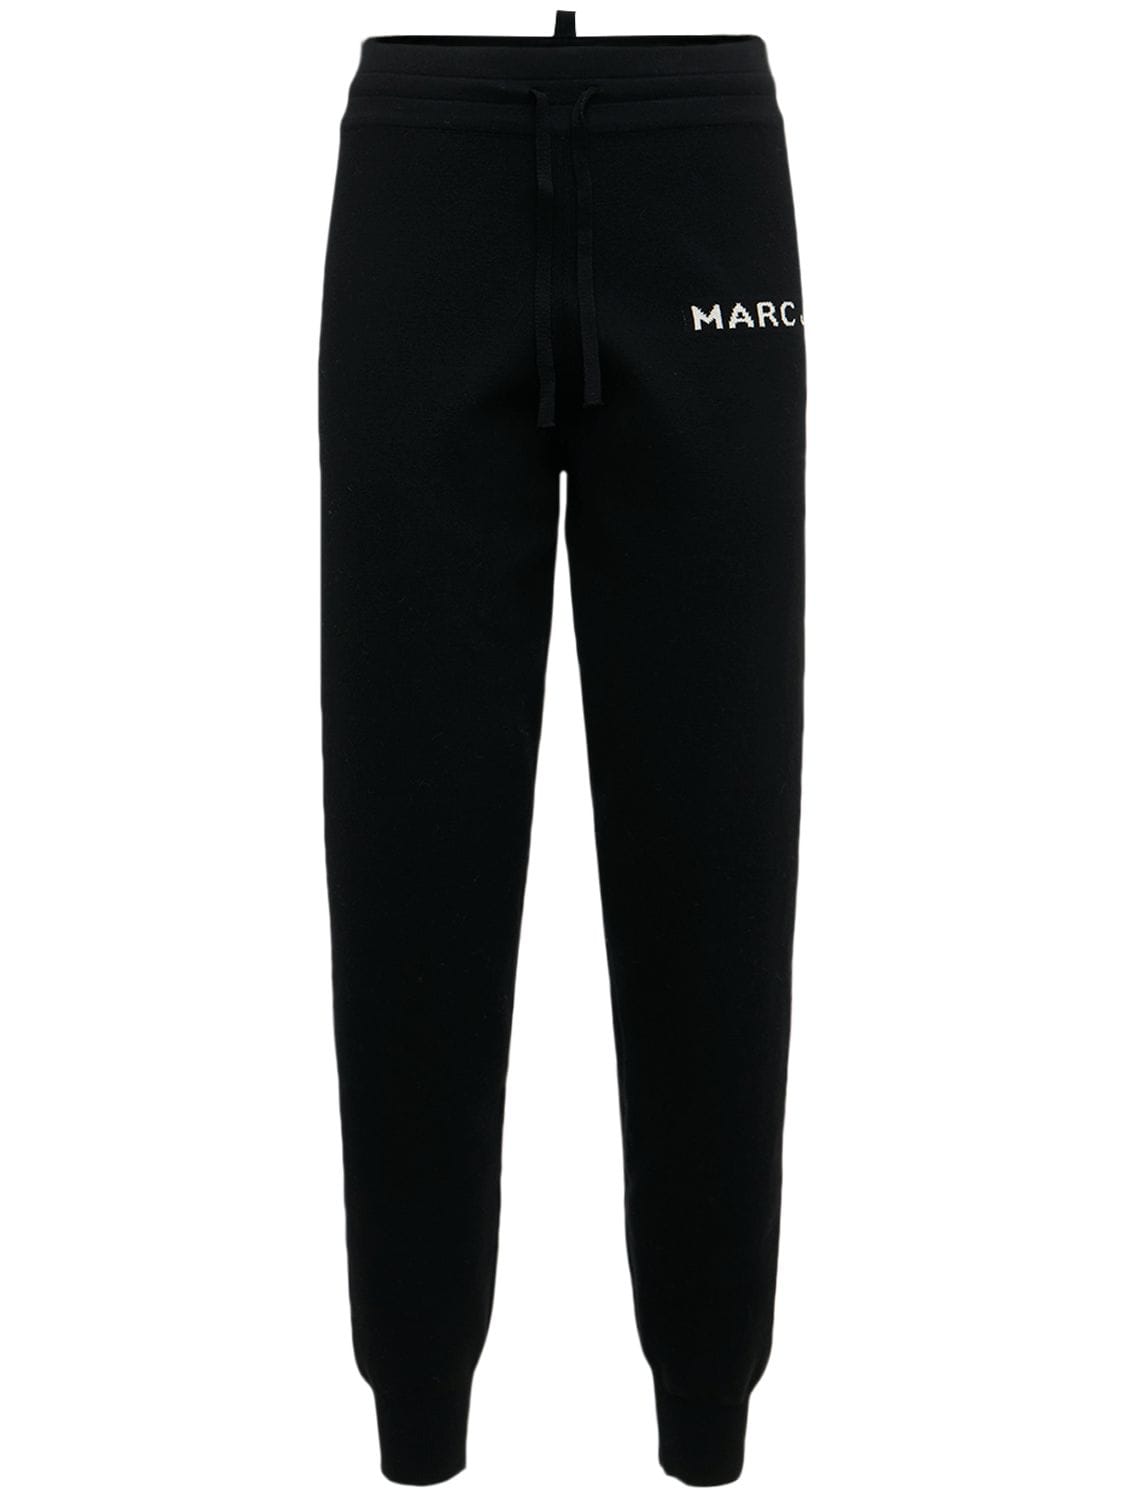 MARC JACOBS (THE) The Knit Logo Cotton Blend Sweatpants